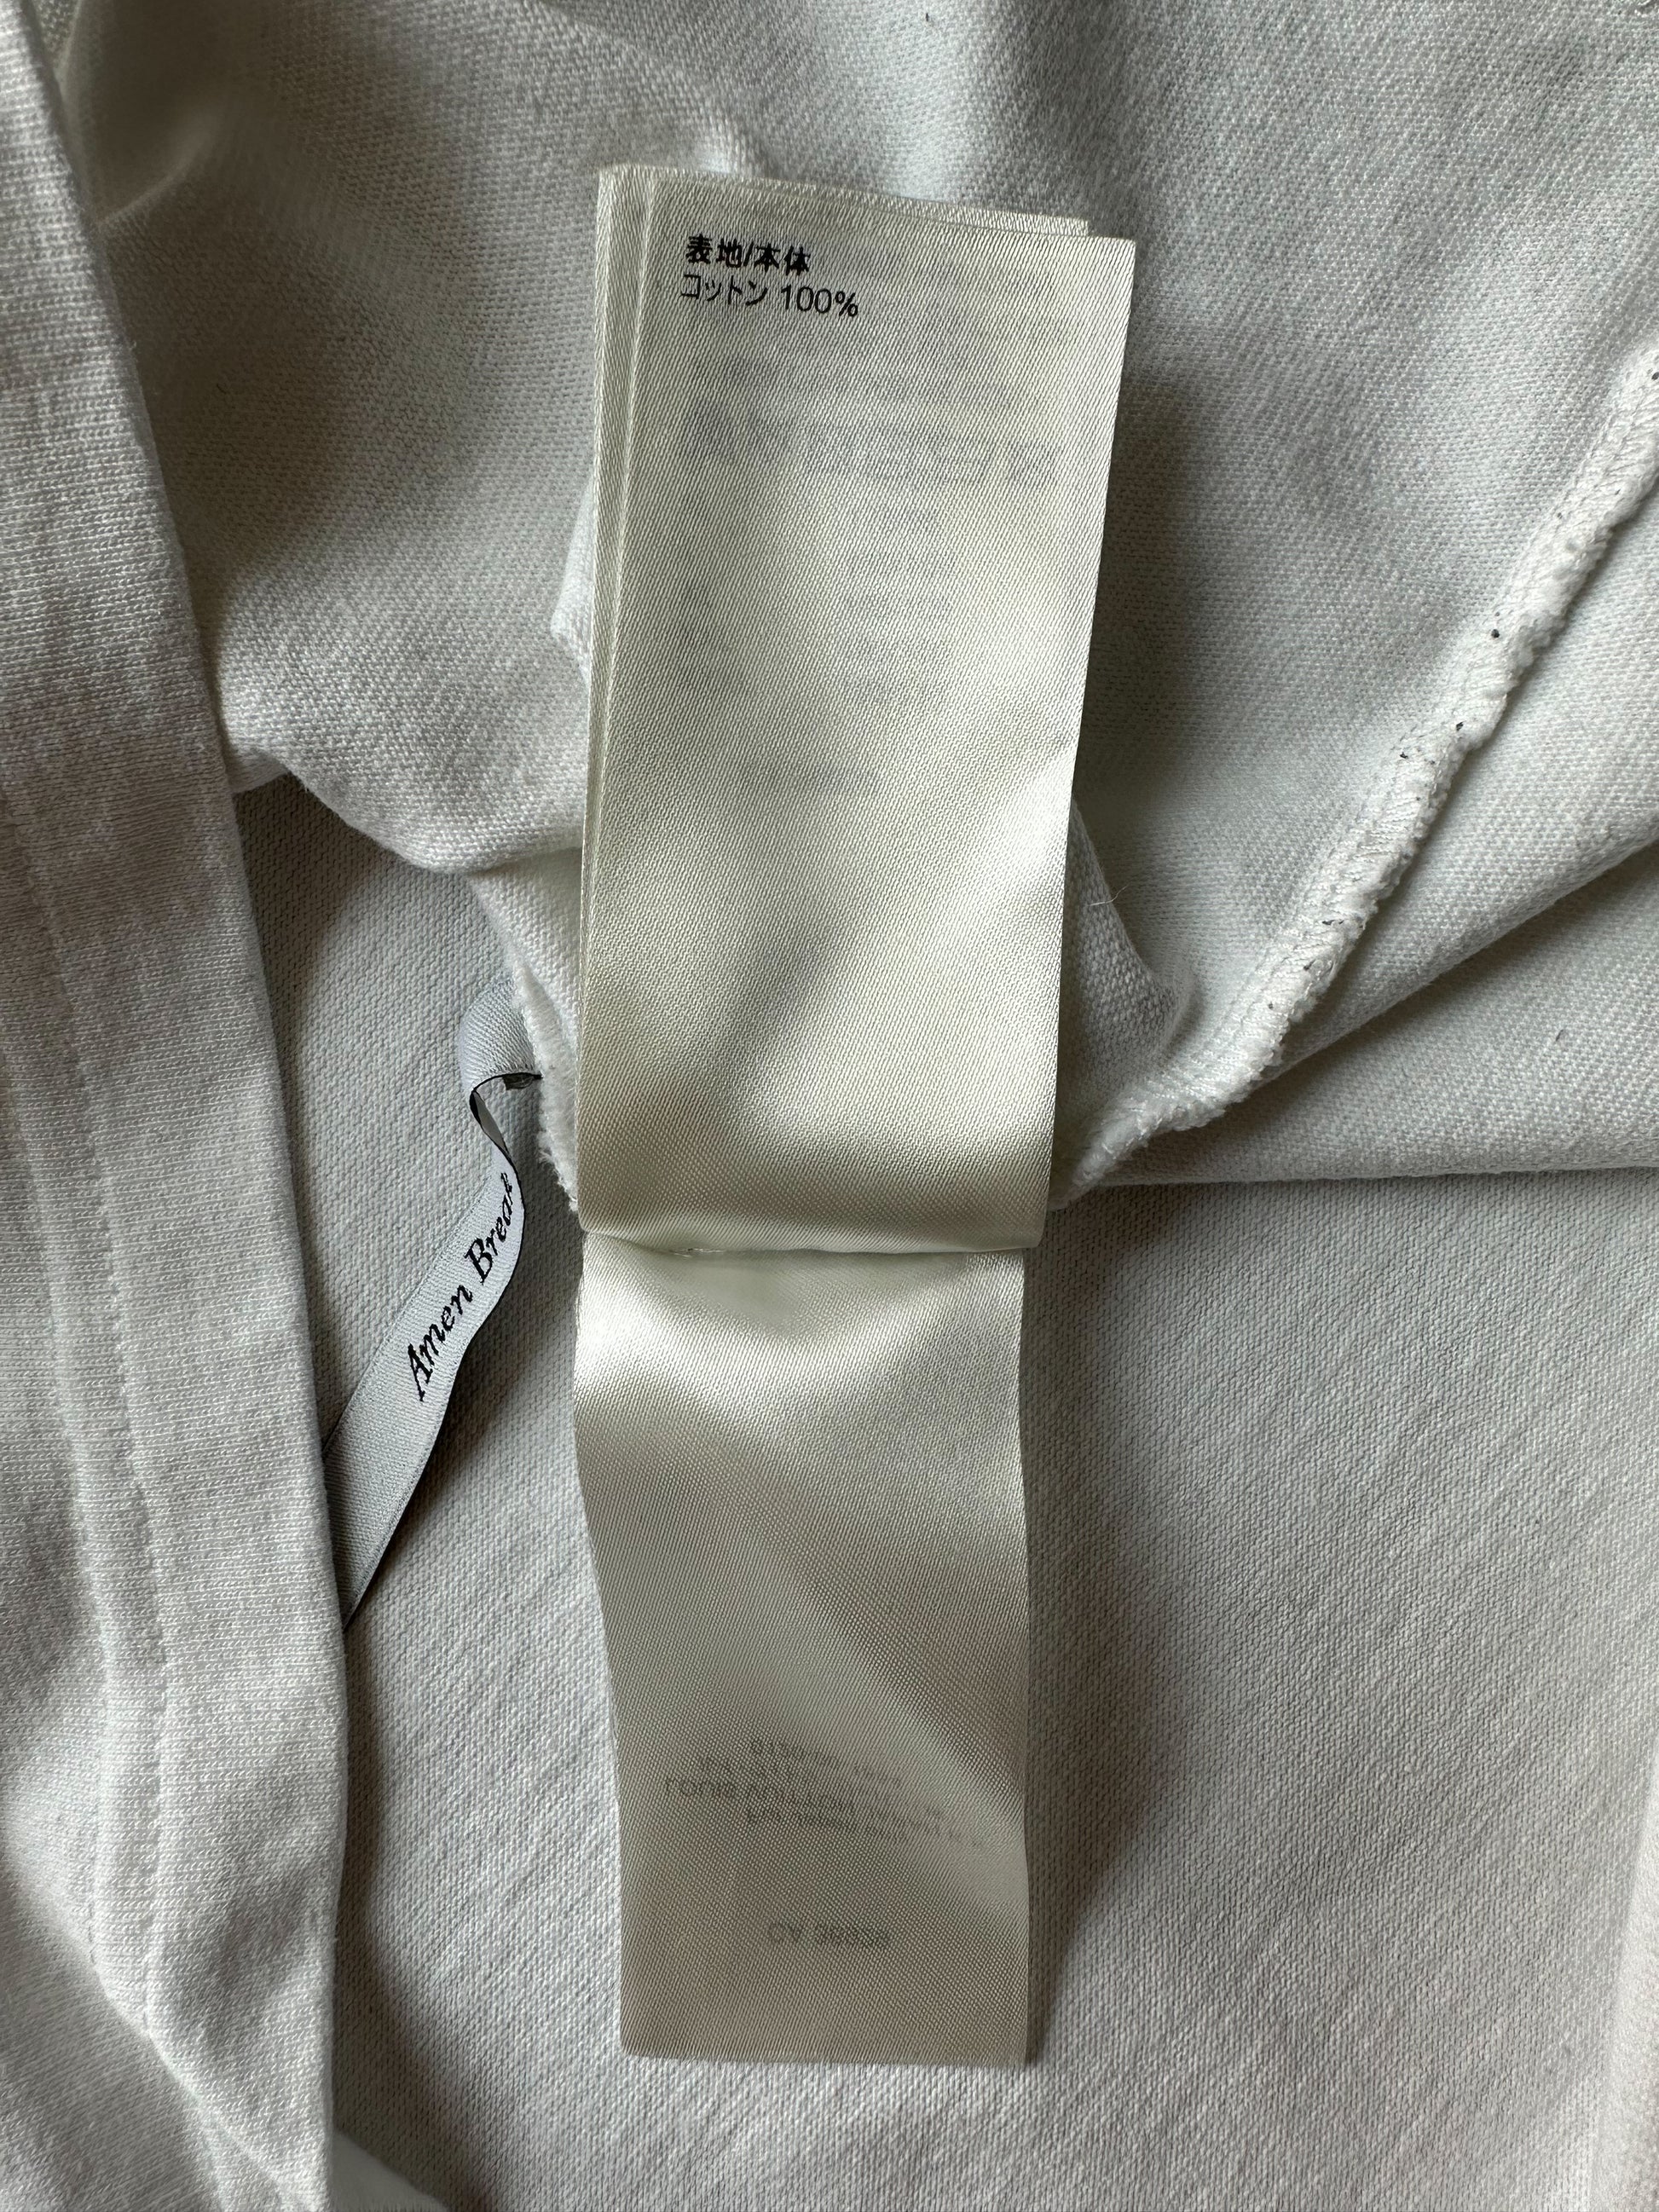 Louis Vuitton Do a Kickflip T-shirt White – STEALPLUG KL